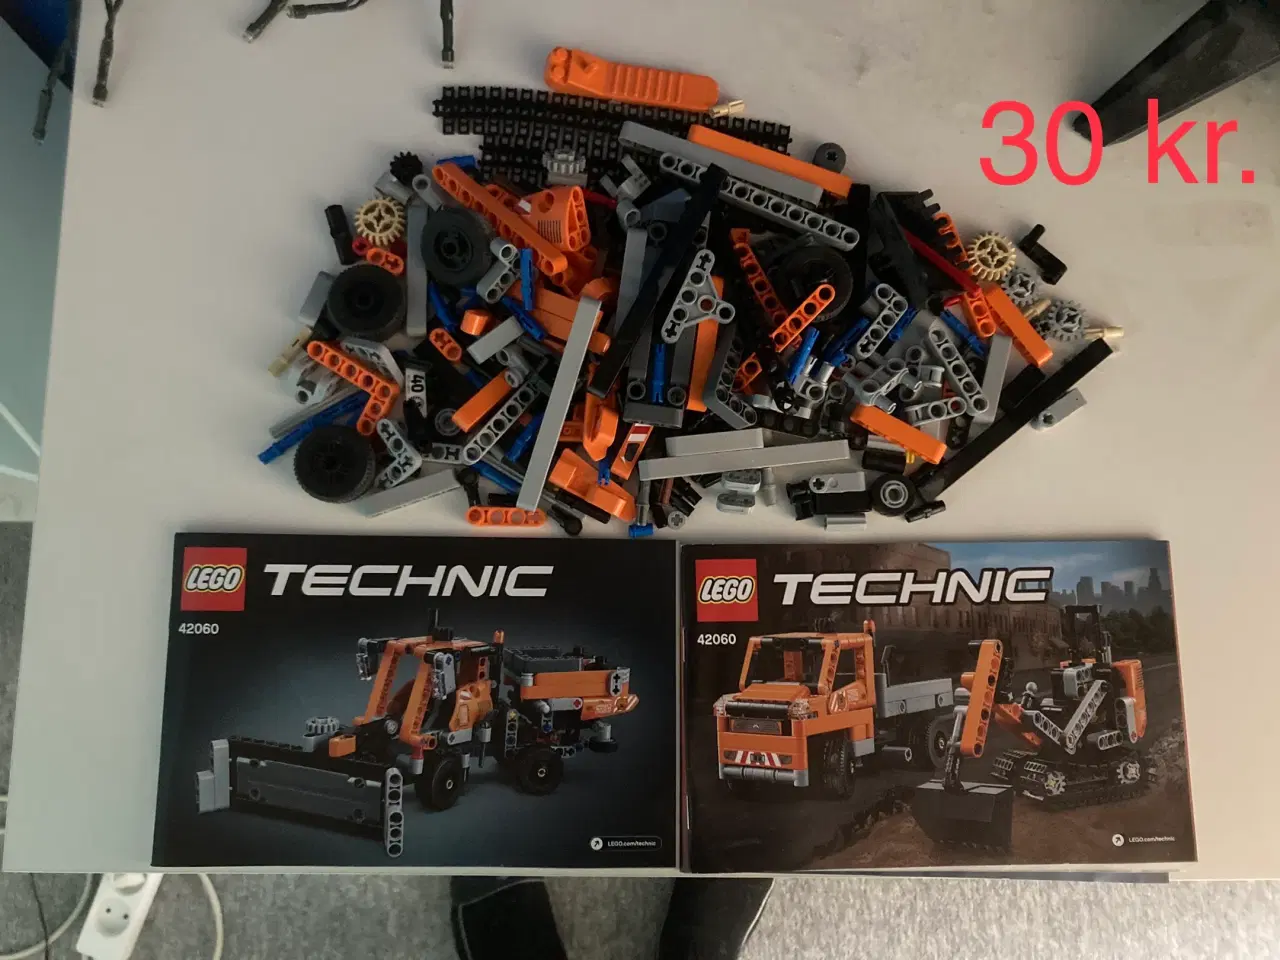 Billede 14 - Legosæt sælges (priserne er fra 5 kr. til 200 kr.)